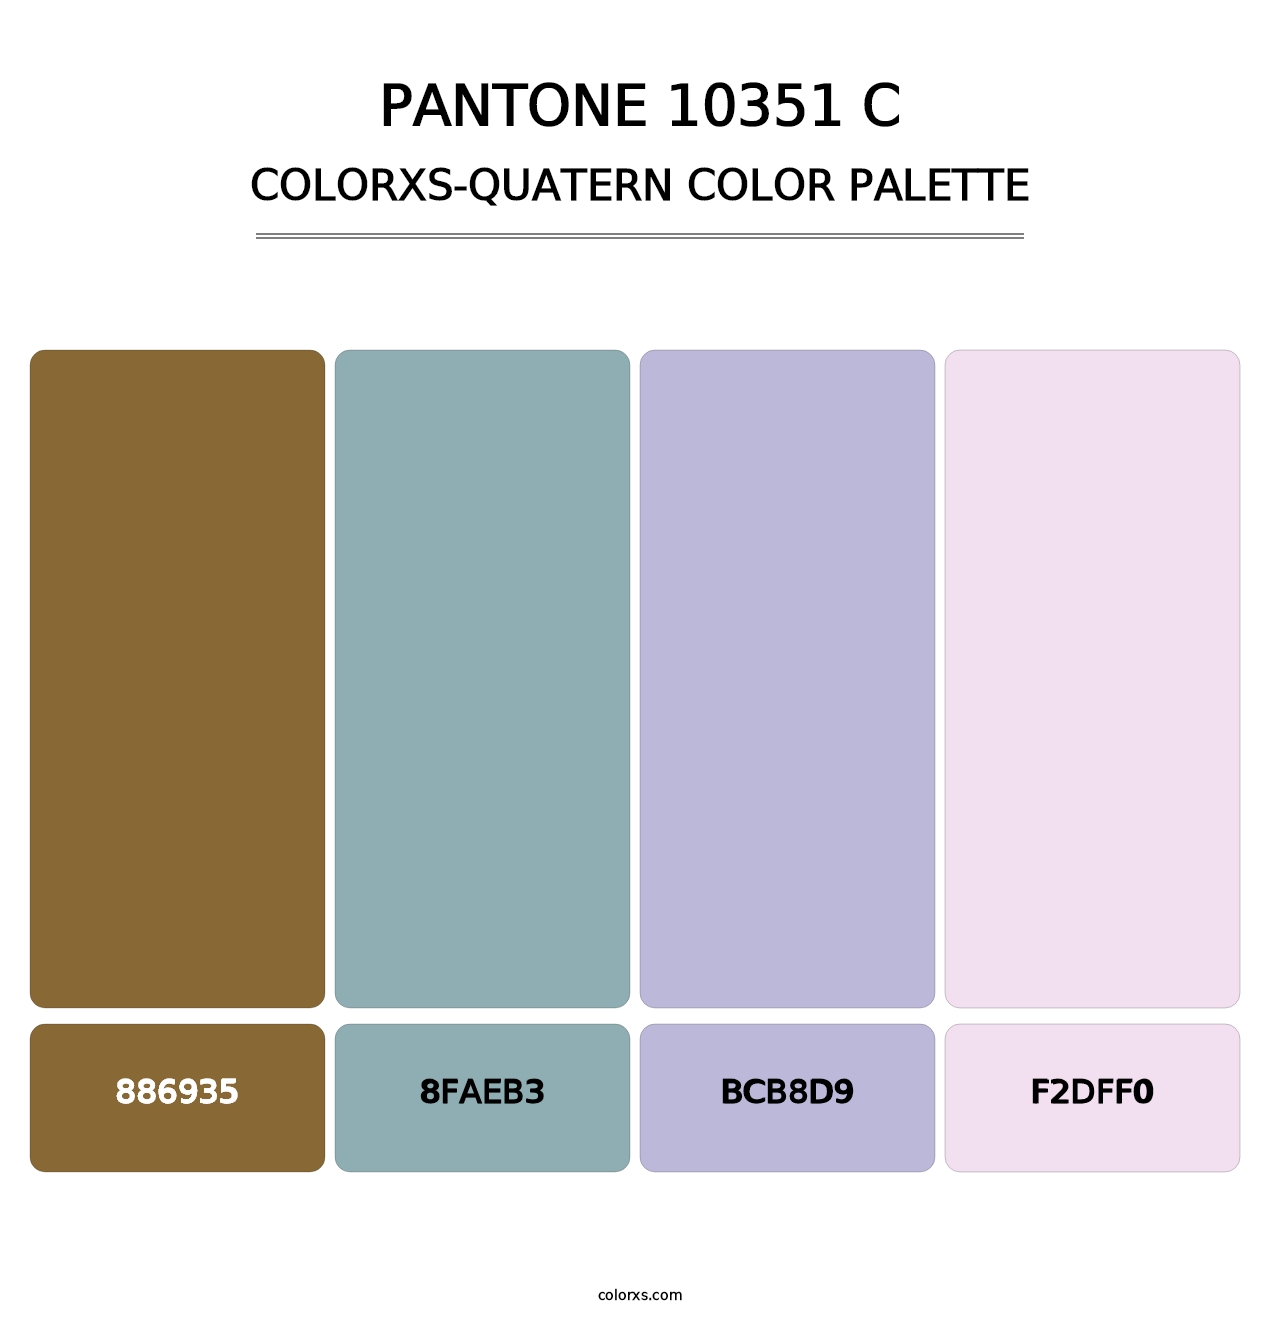 PANTONE 10351 C - Colorxs Quatern Palette